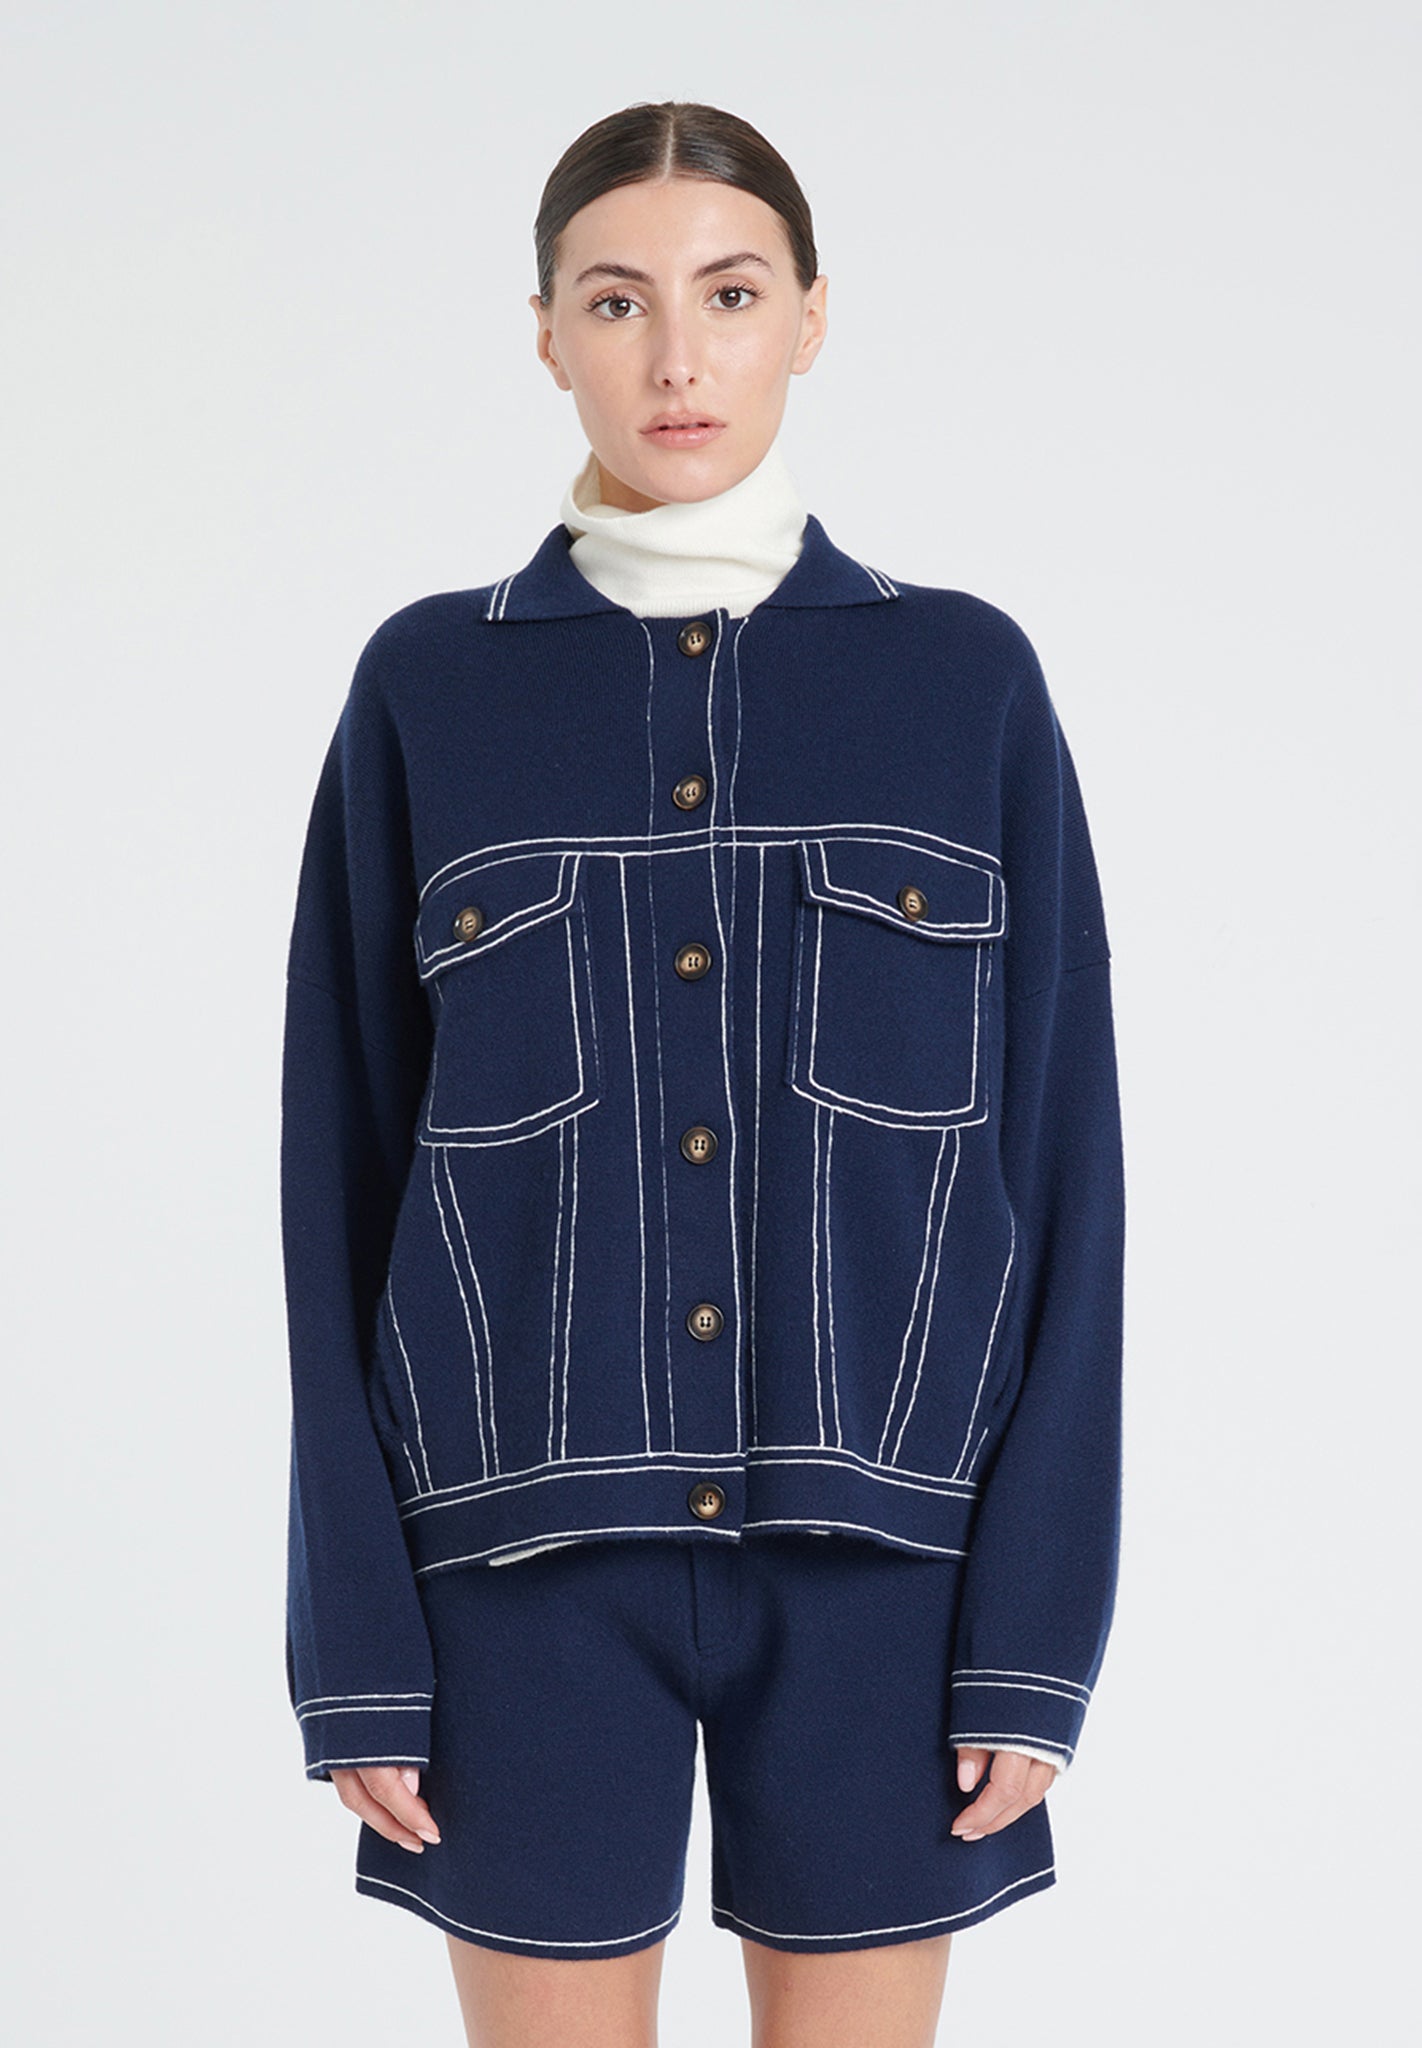 ZAYA 14 Milano knit jacket in navy blue cashmere